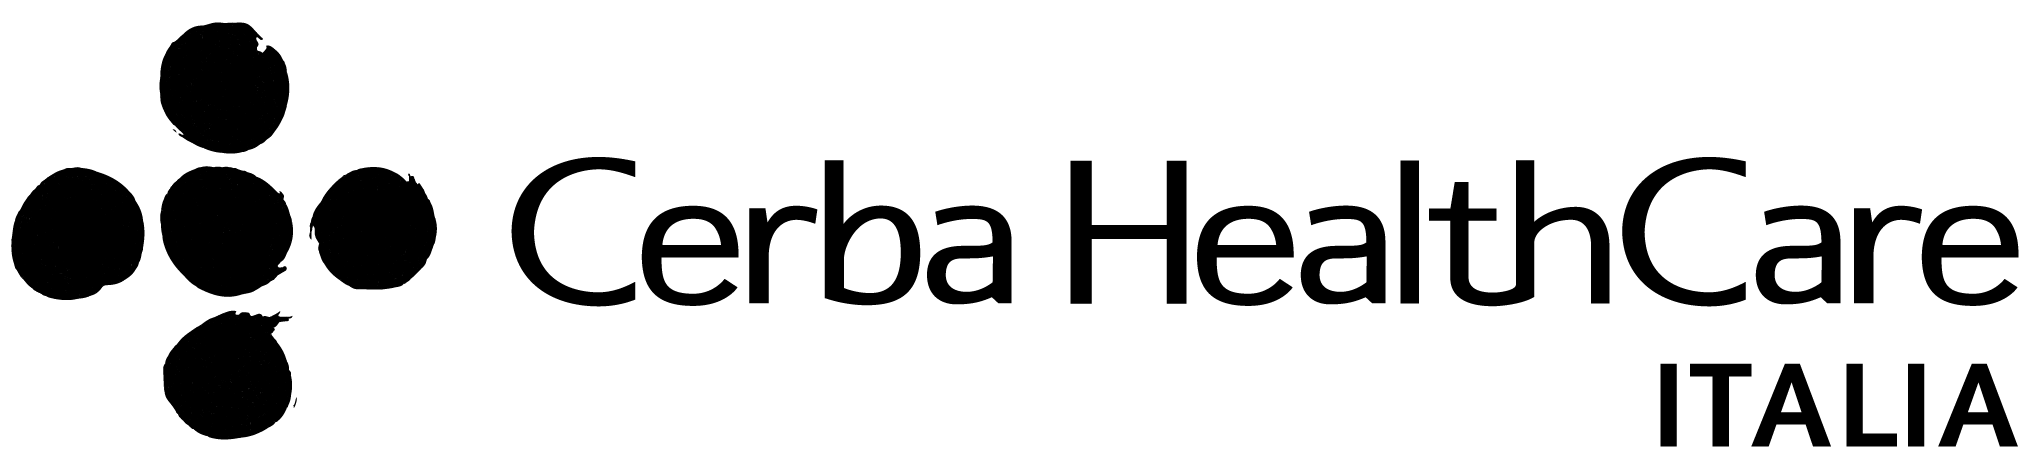 logo CERBA HEALTHCARE